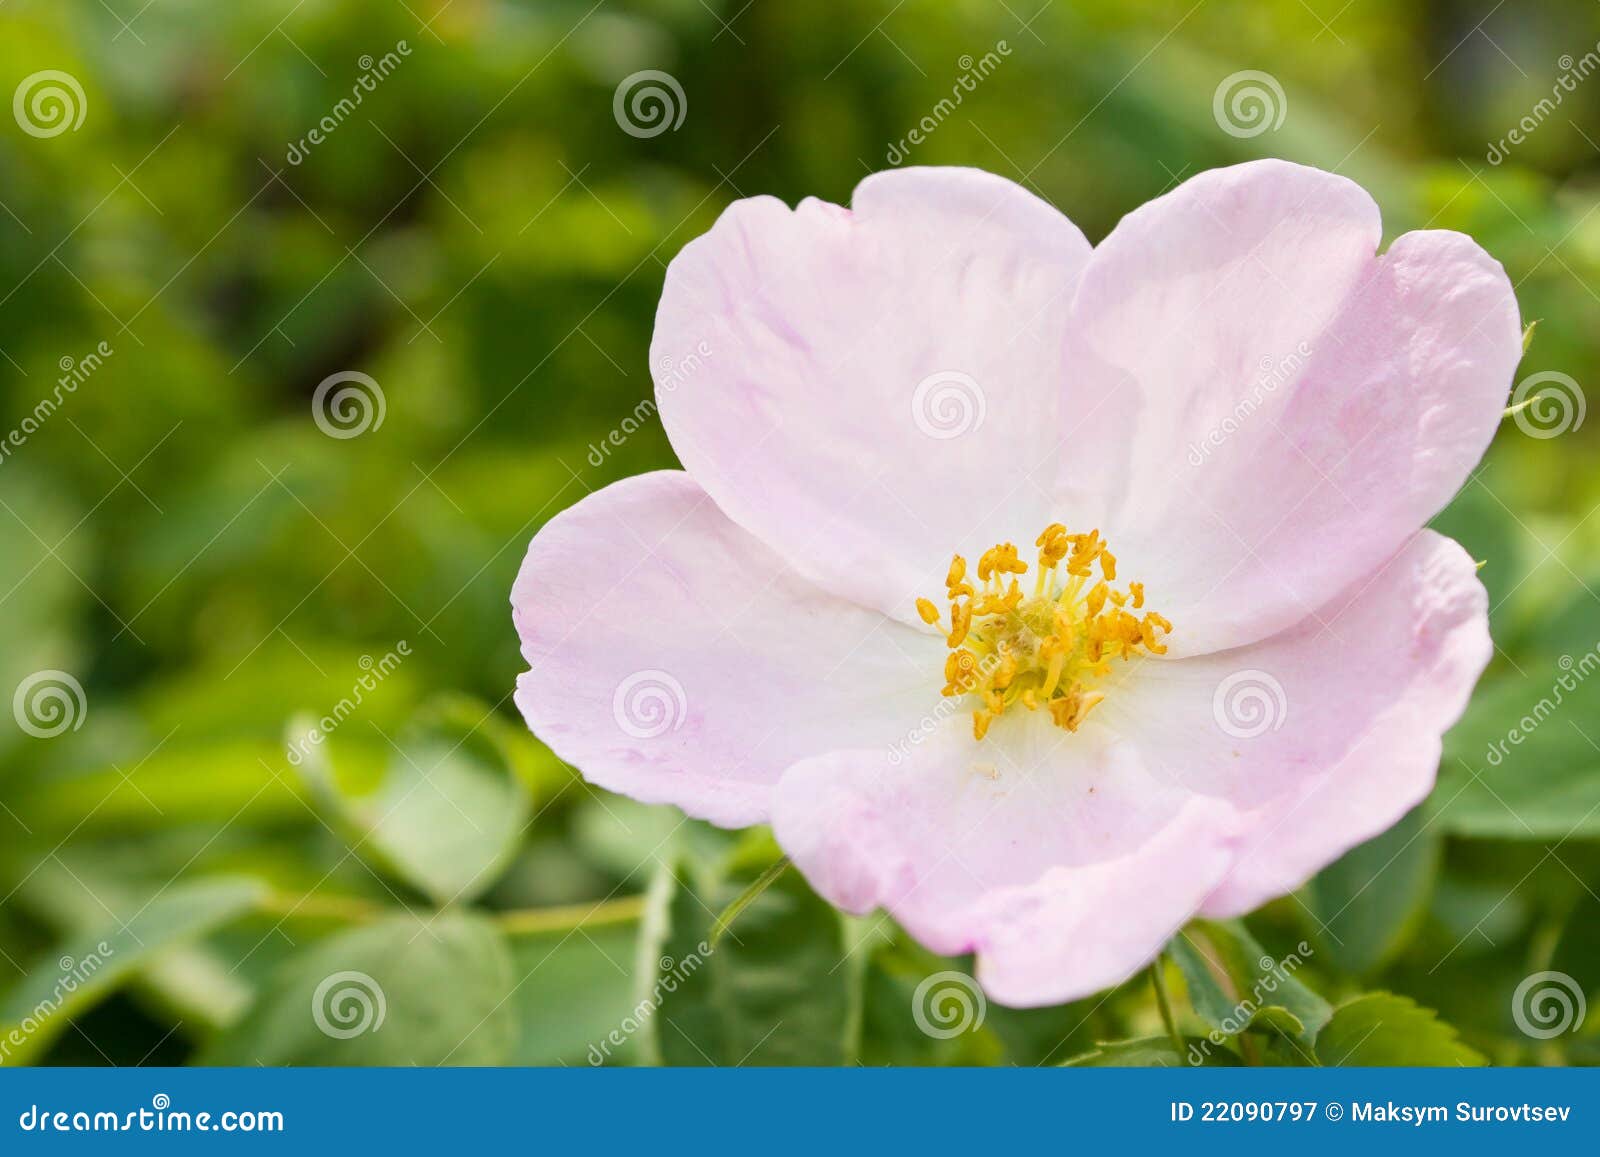 Wild rose flowering stock image. Image of rose, horizontal - 22090797